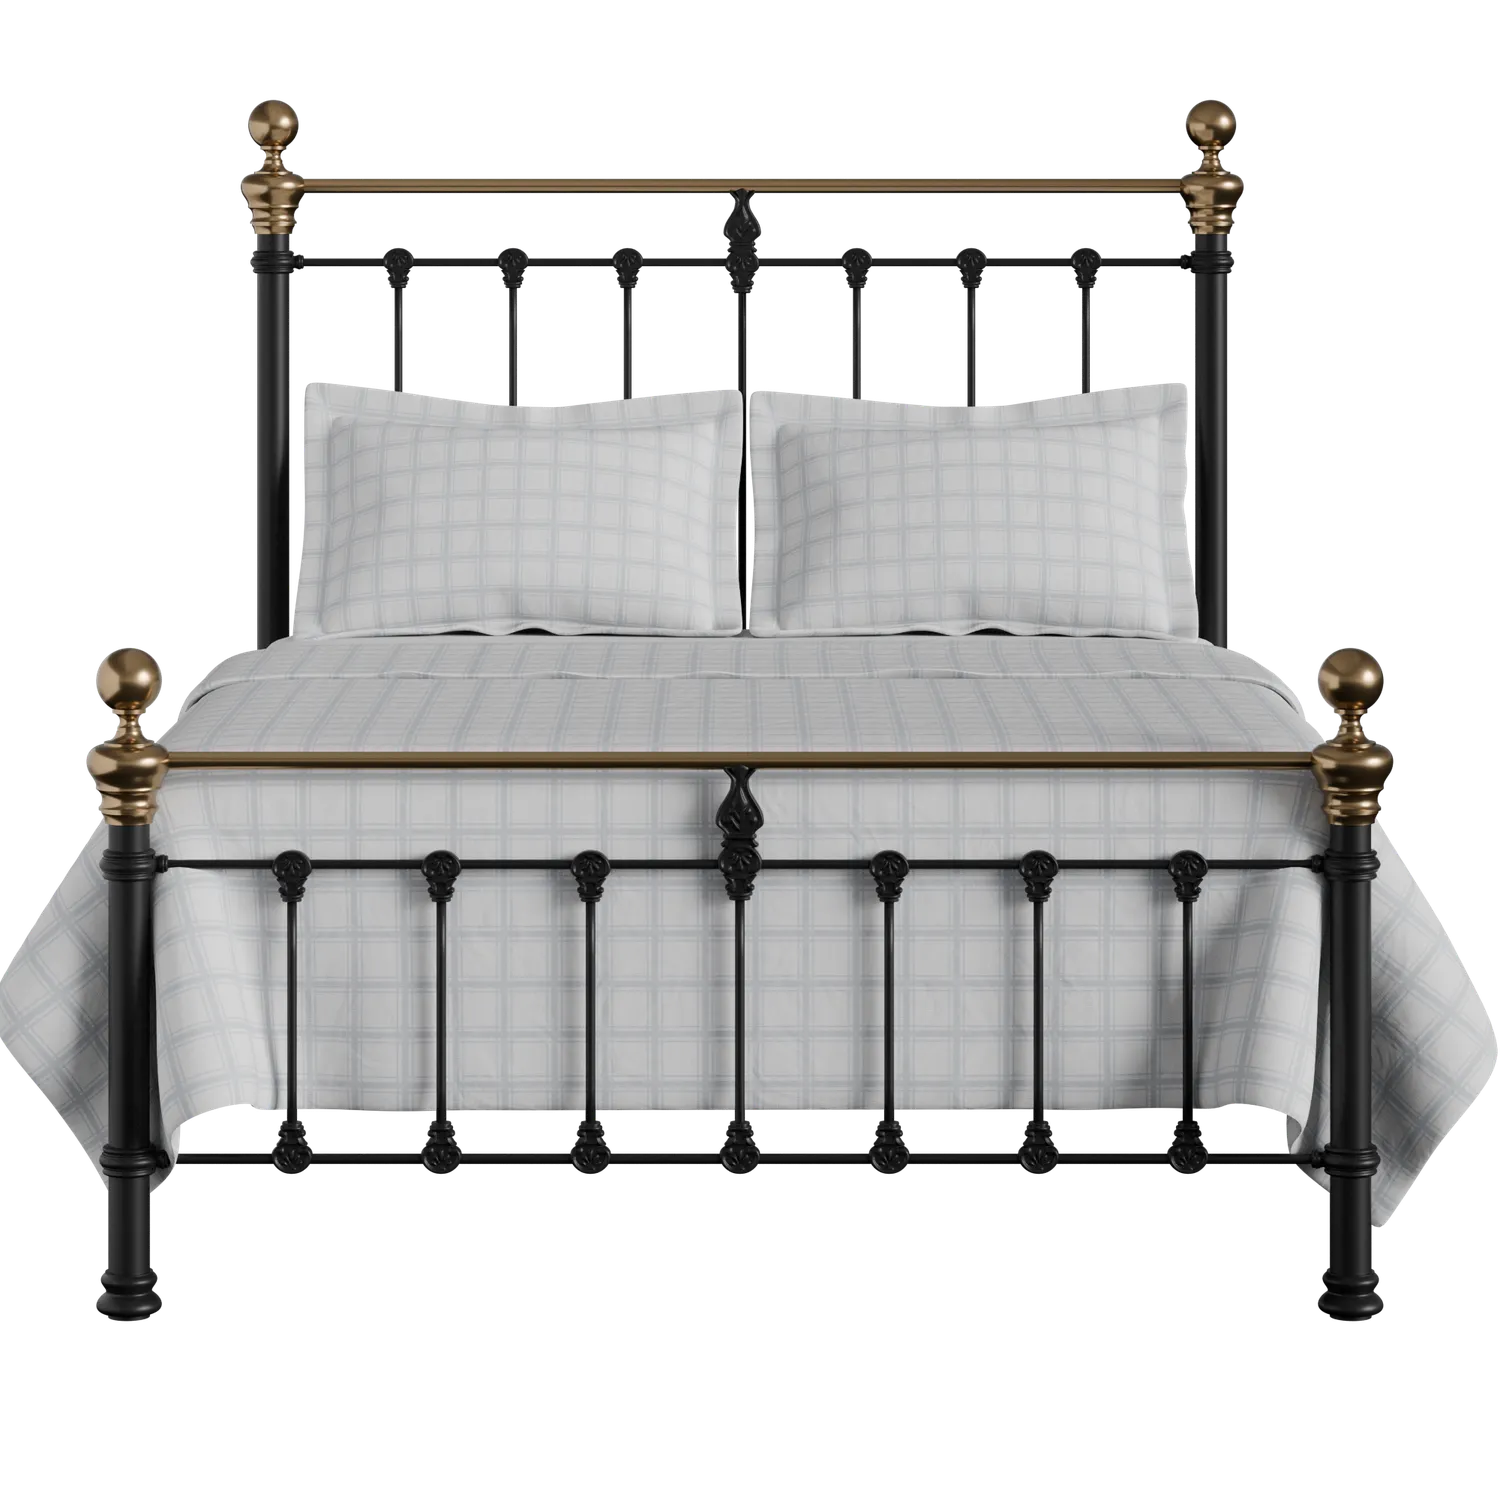 Iron & Brass Sleigh Bed - Iron Beds